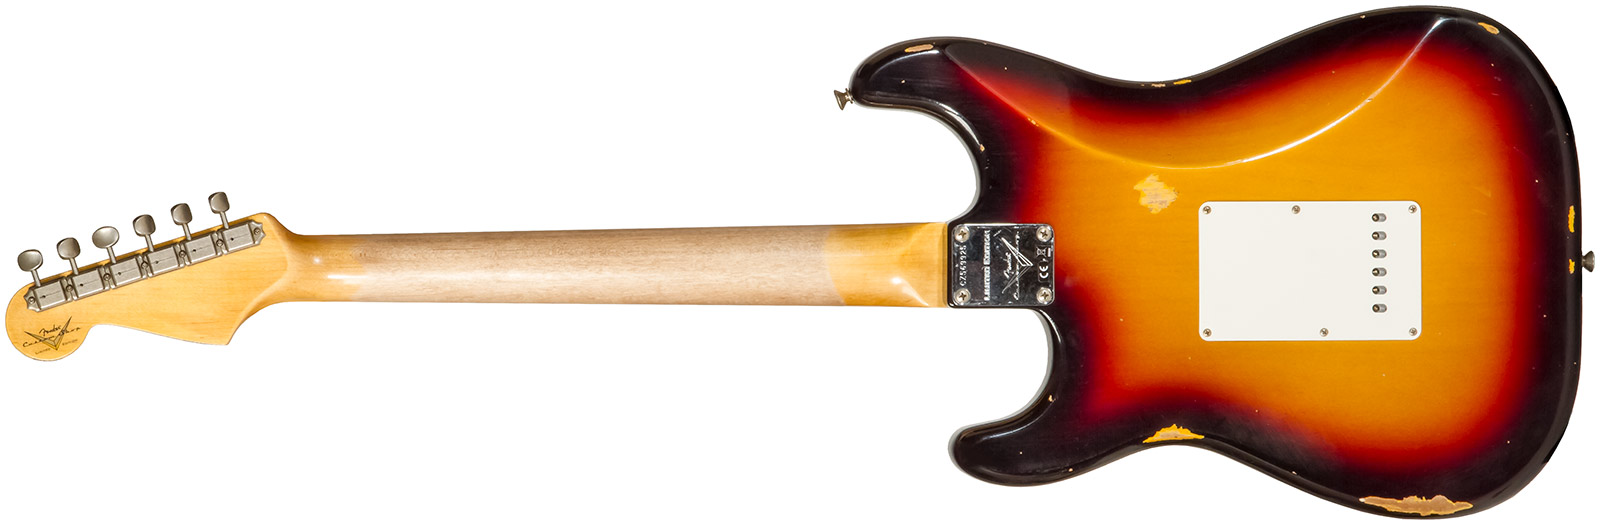 Fender Custom Shop Strat Late 1964 3s Trem Rw #cz569925 - Relic Target 3-color Sunburst - Elektrische gitaar in Str-vorm - Variation 1